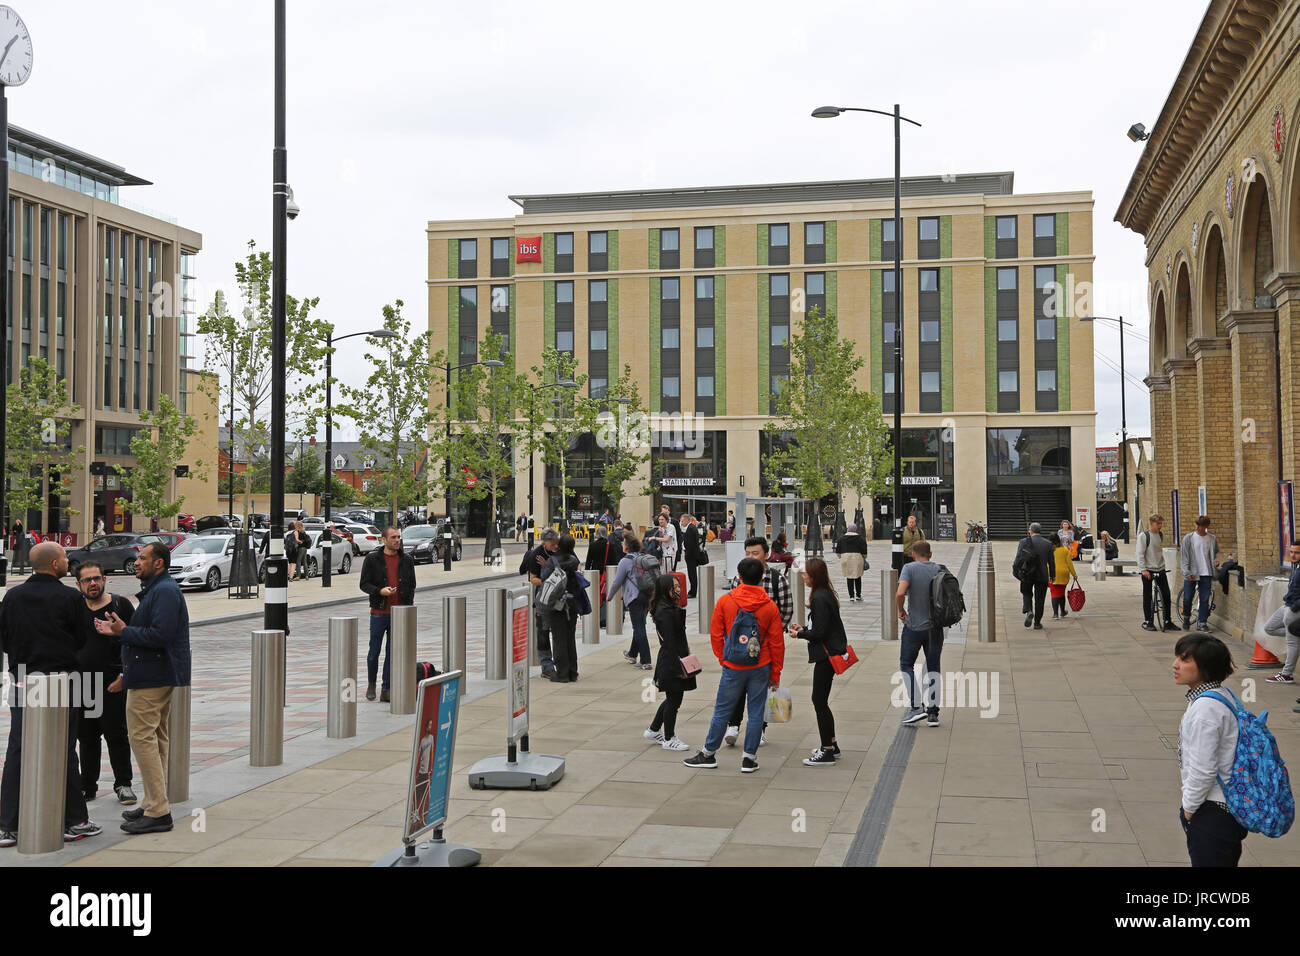 Station Plaza nouvellement réaménagé à Cambridge, Royaume-Uni. Montre de nouveaux Ibis Hotel (centre) et de la gare (à l'extrême droite).aussi anti-terrorisme bollards en acier. Banque D'Images